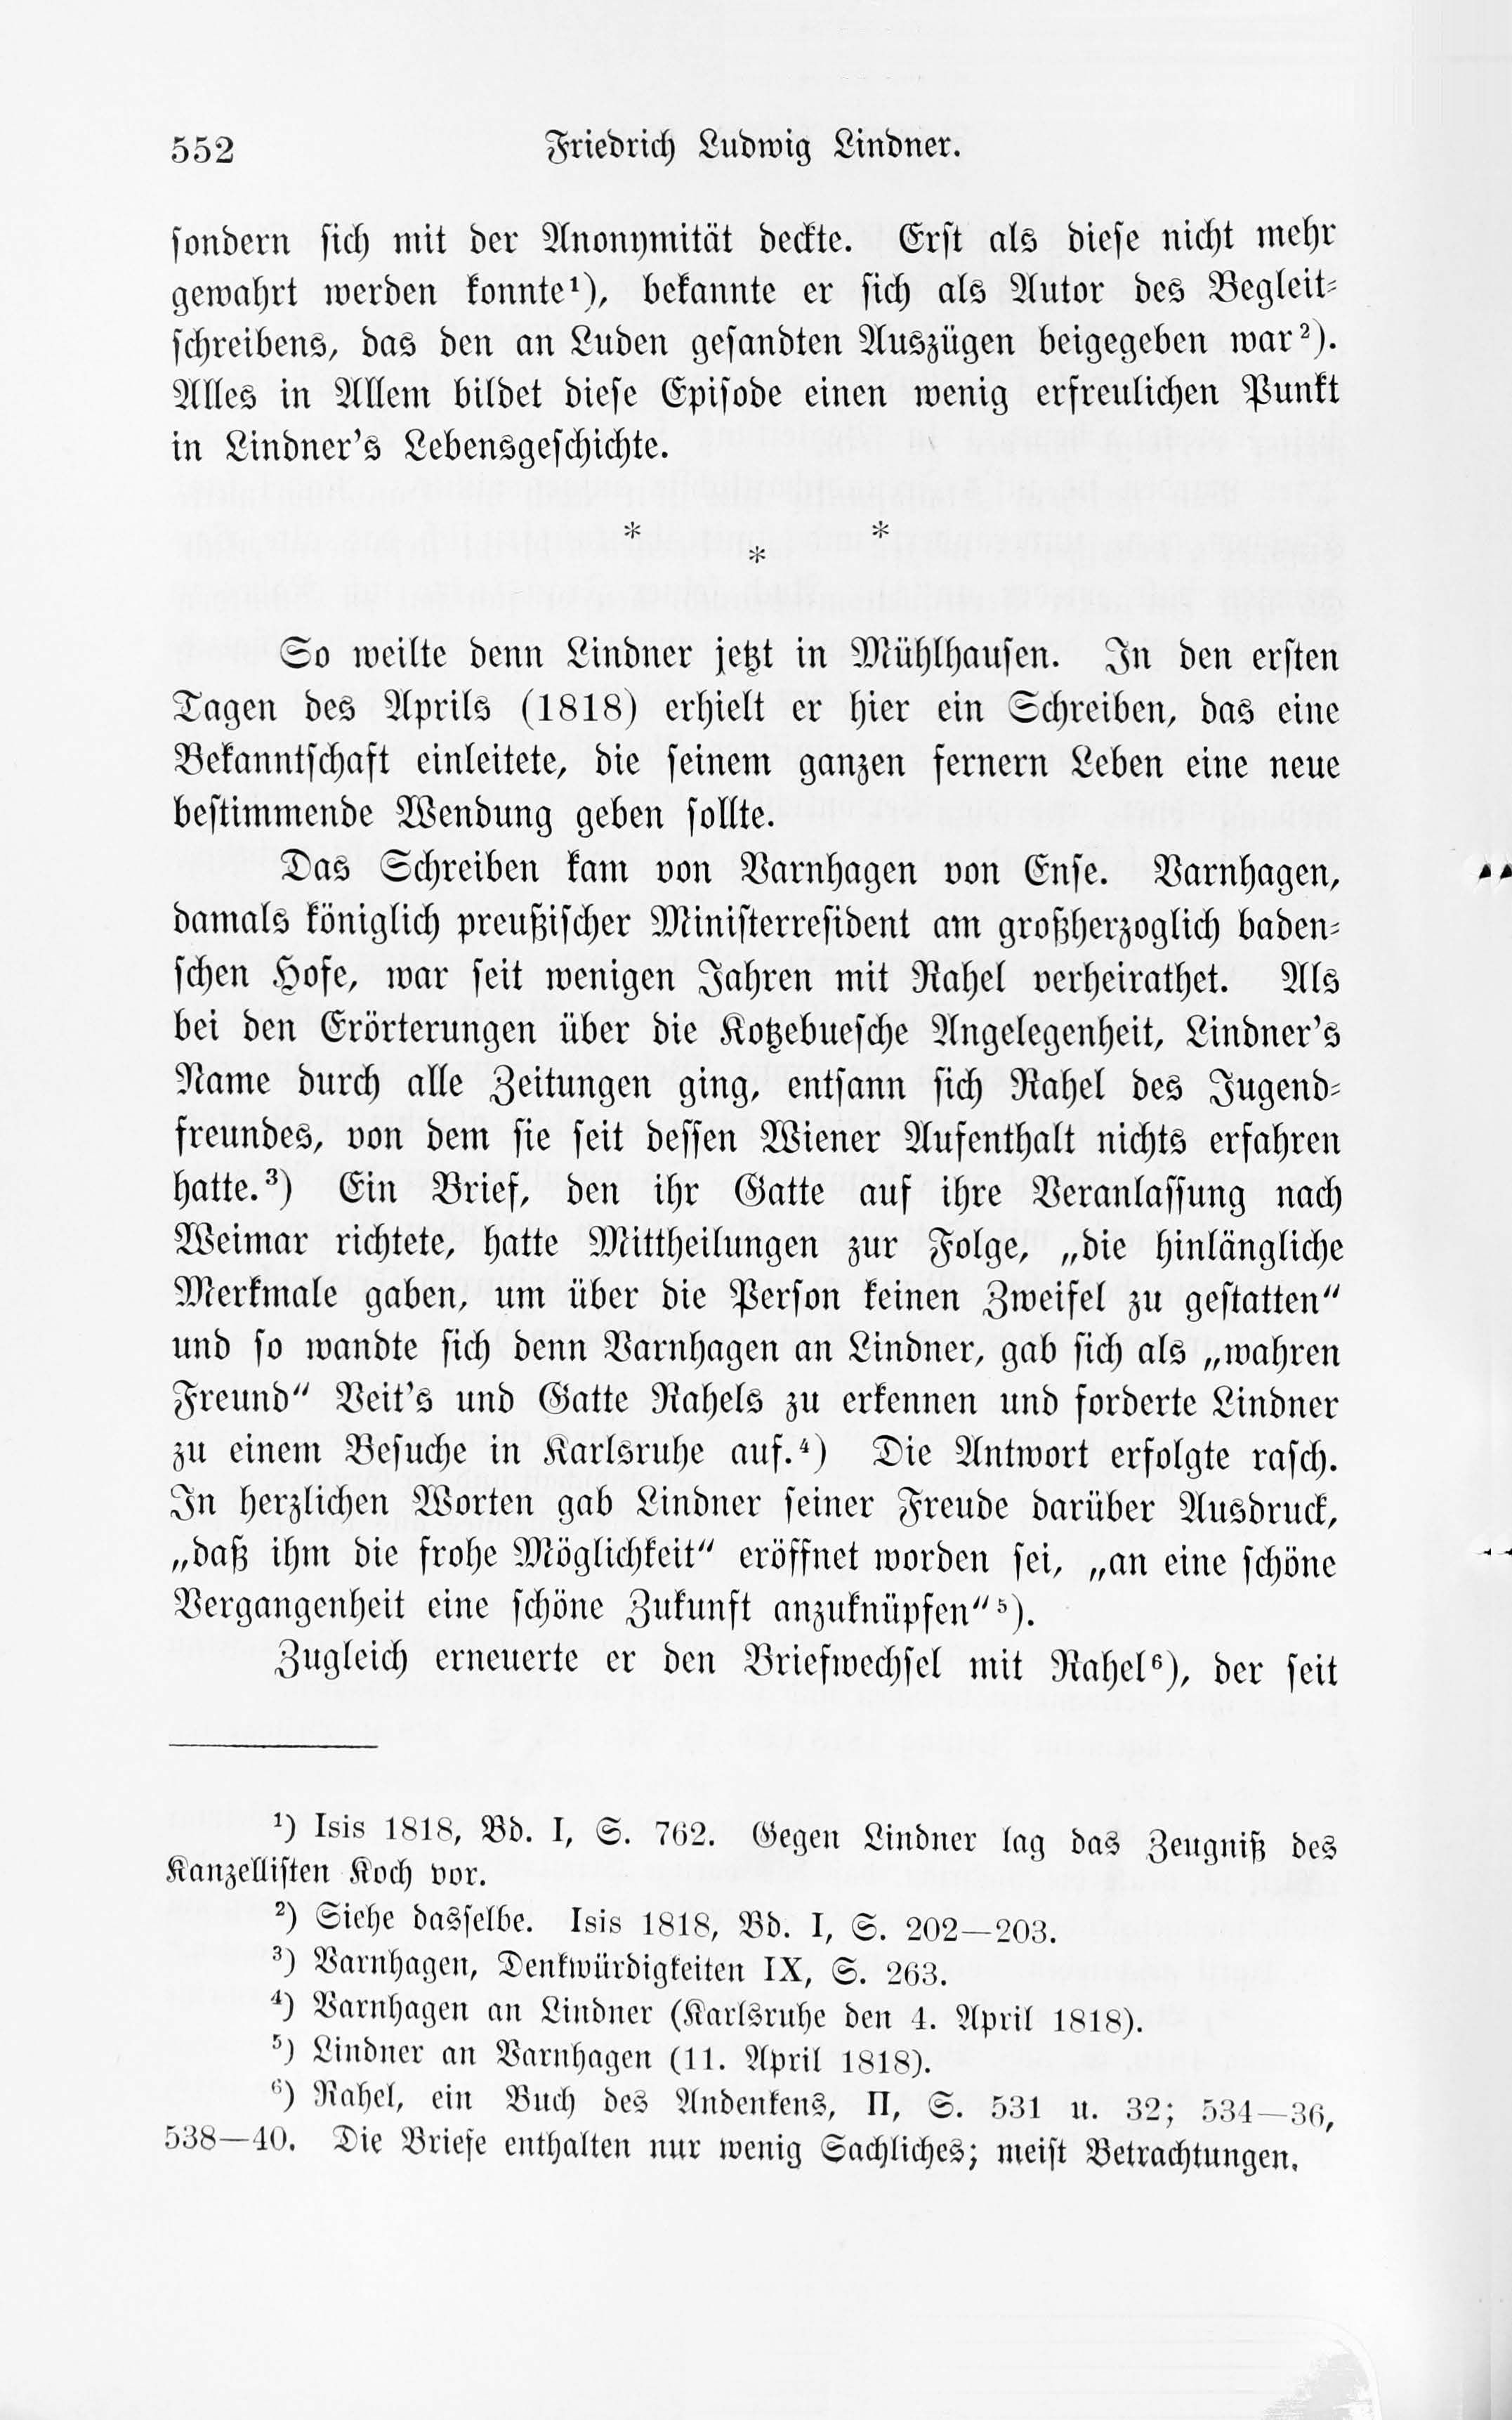 Leben und Schriften des Kurländers Friedrich Ludwig Lindner [1] (1895) | 22. Põhitekst